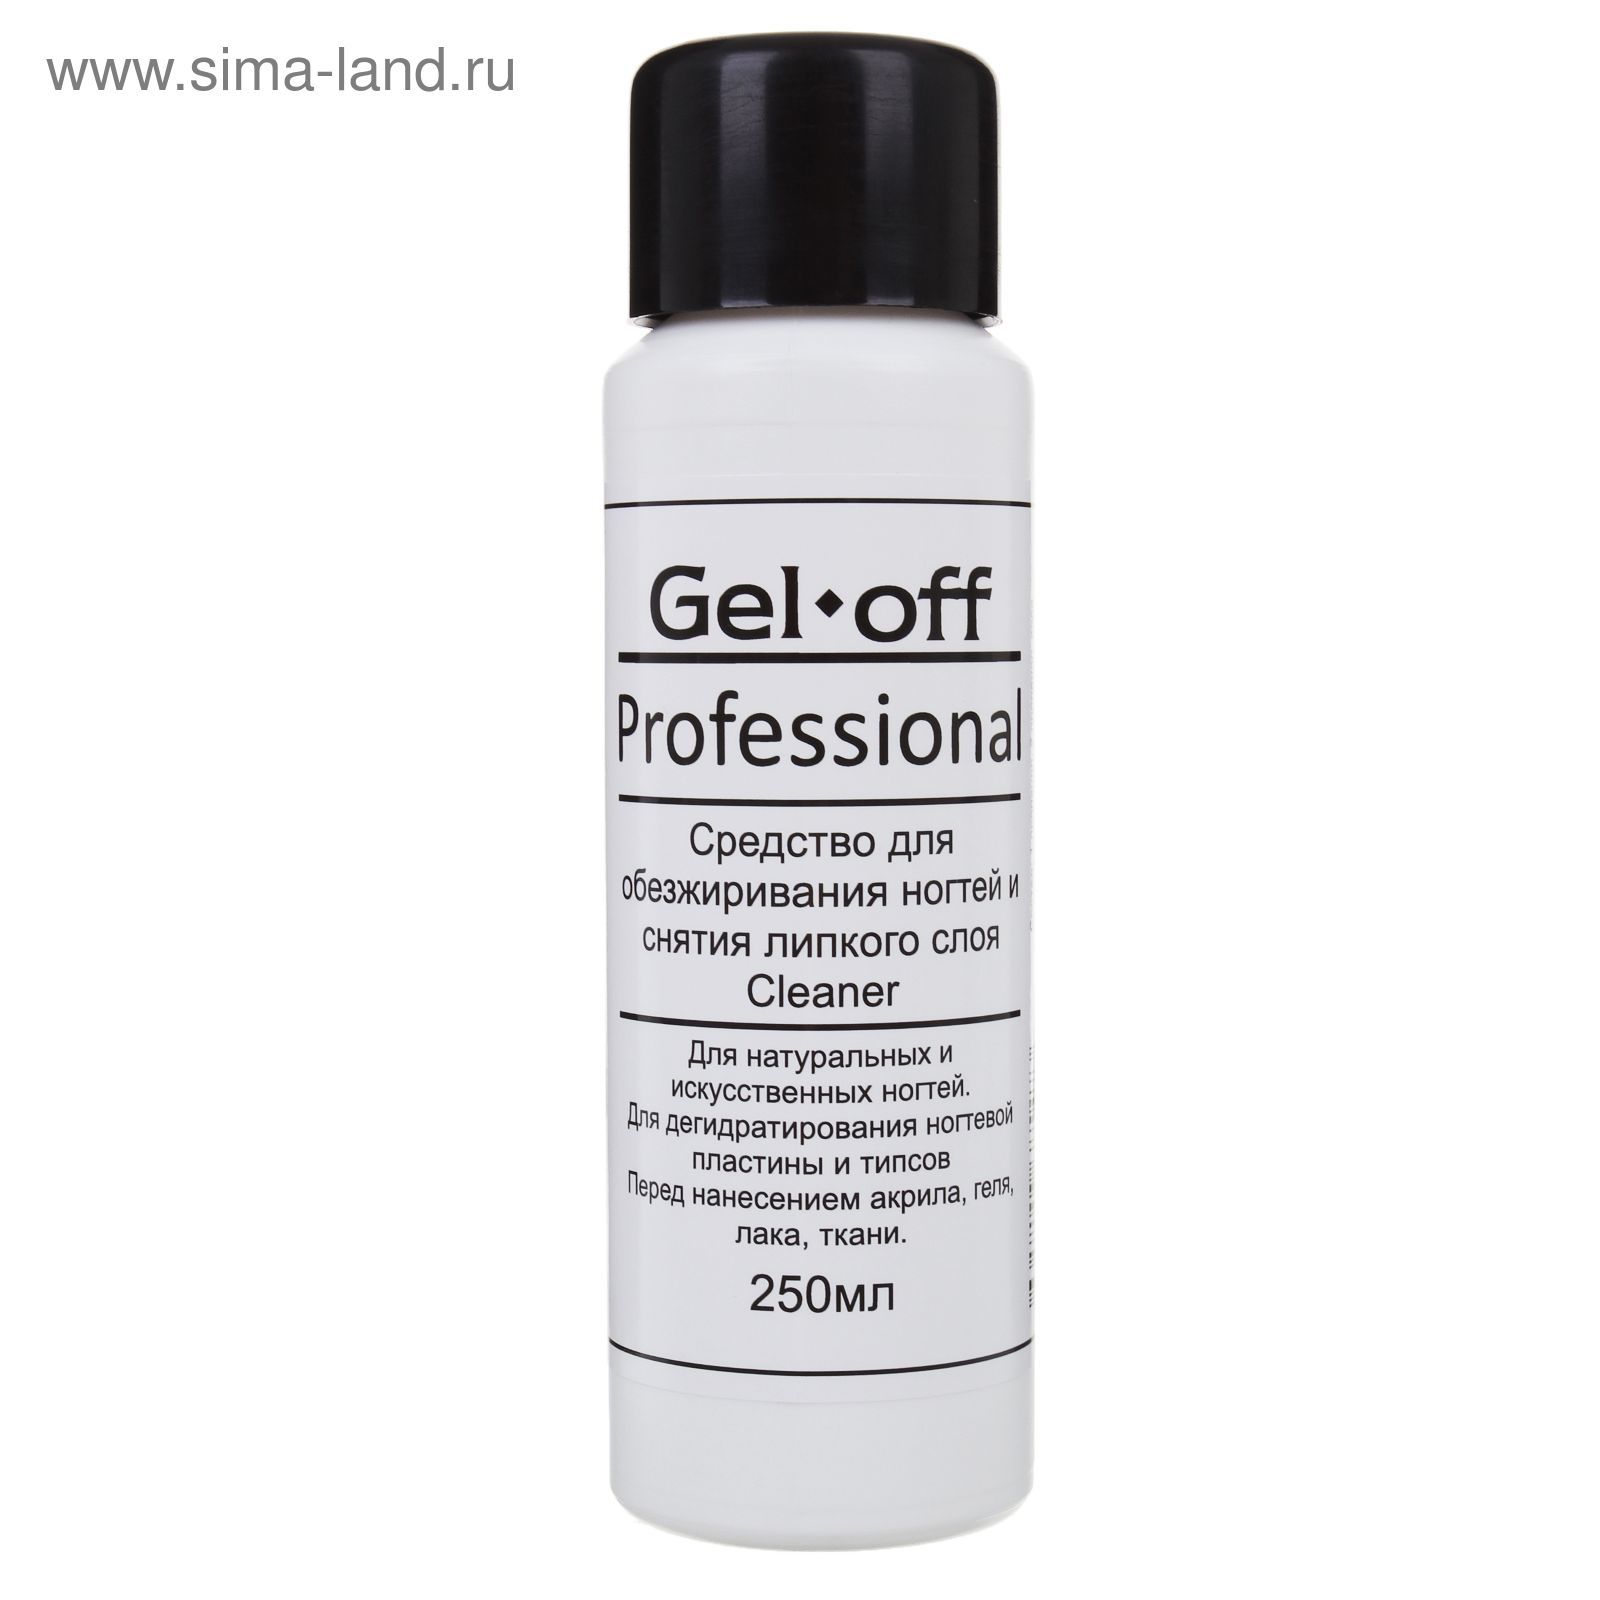 Средство для обезжиривания ногтей и снятия липкого слоя Gel*off Cleaner Professional 250 мл